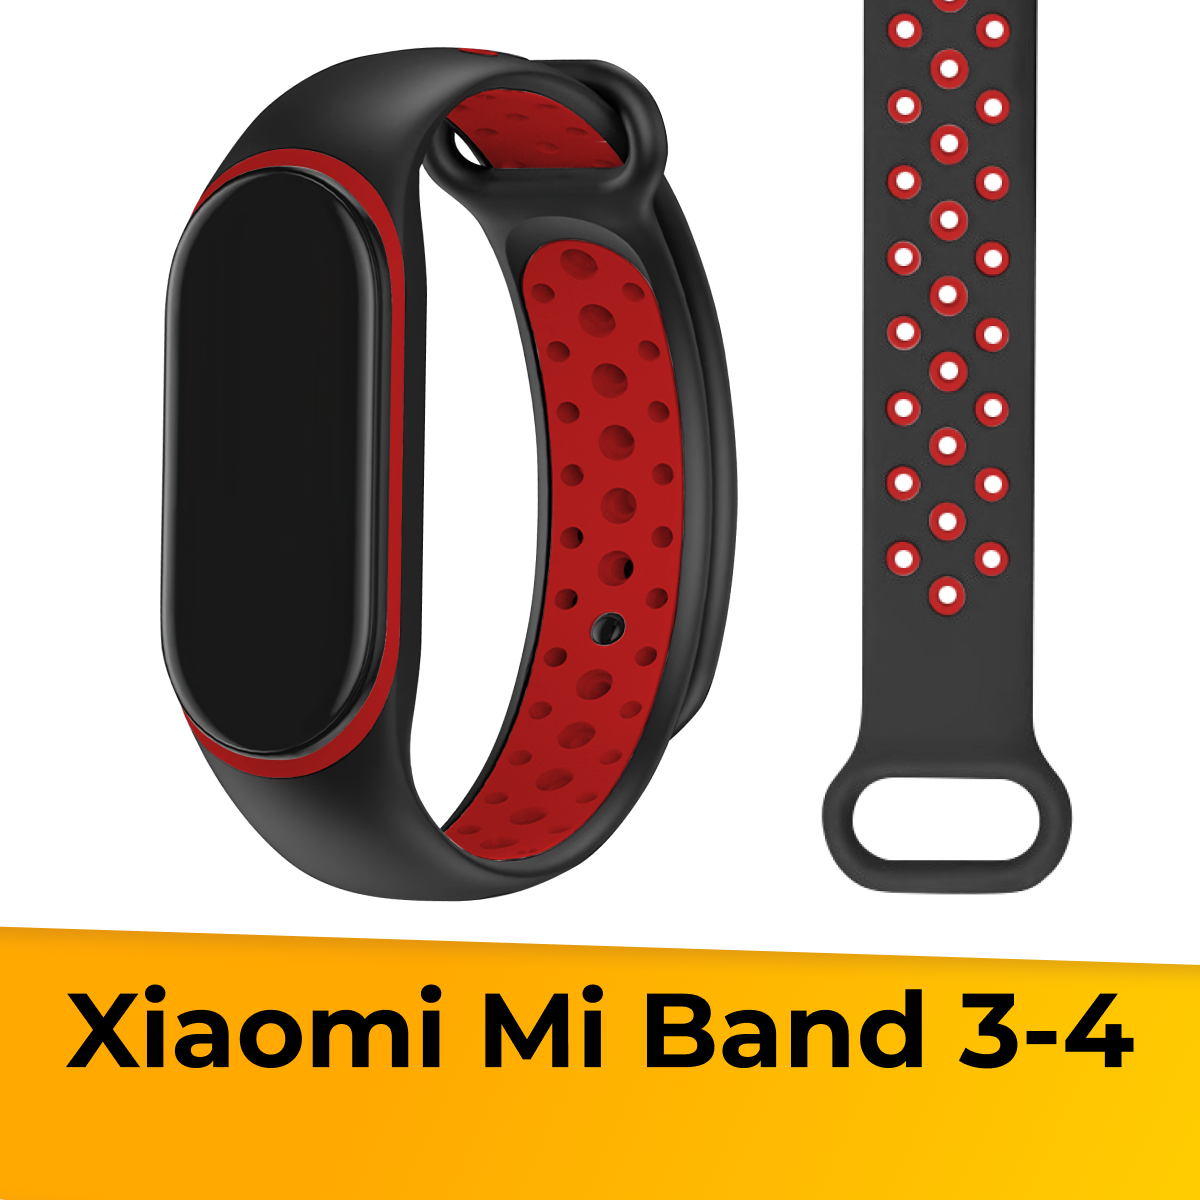 Силиконовый ремешок с перфорацией для фитнес трекера Xiaomi Mi Band 3 и 4 / Сменный спортивный браслет на часы Сяоми Ми Бэнд 3 и 4 / Черно-желтый